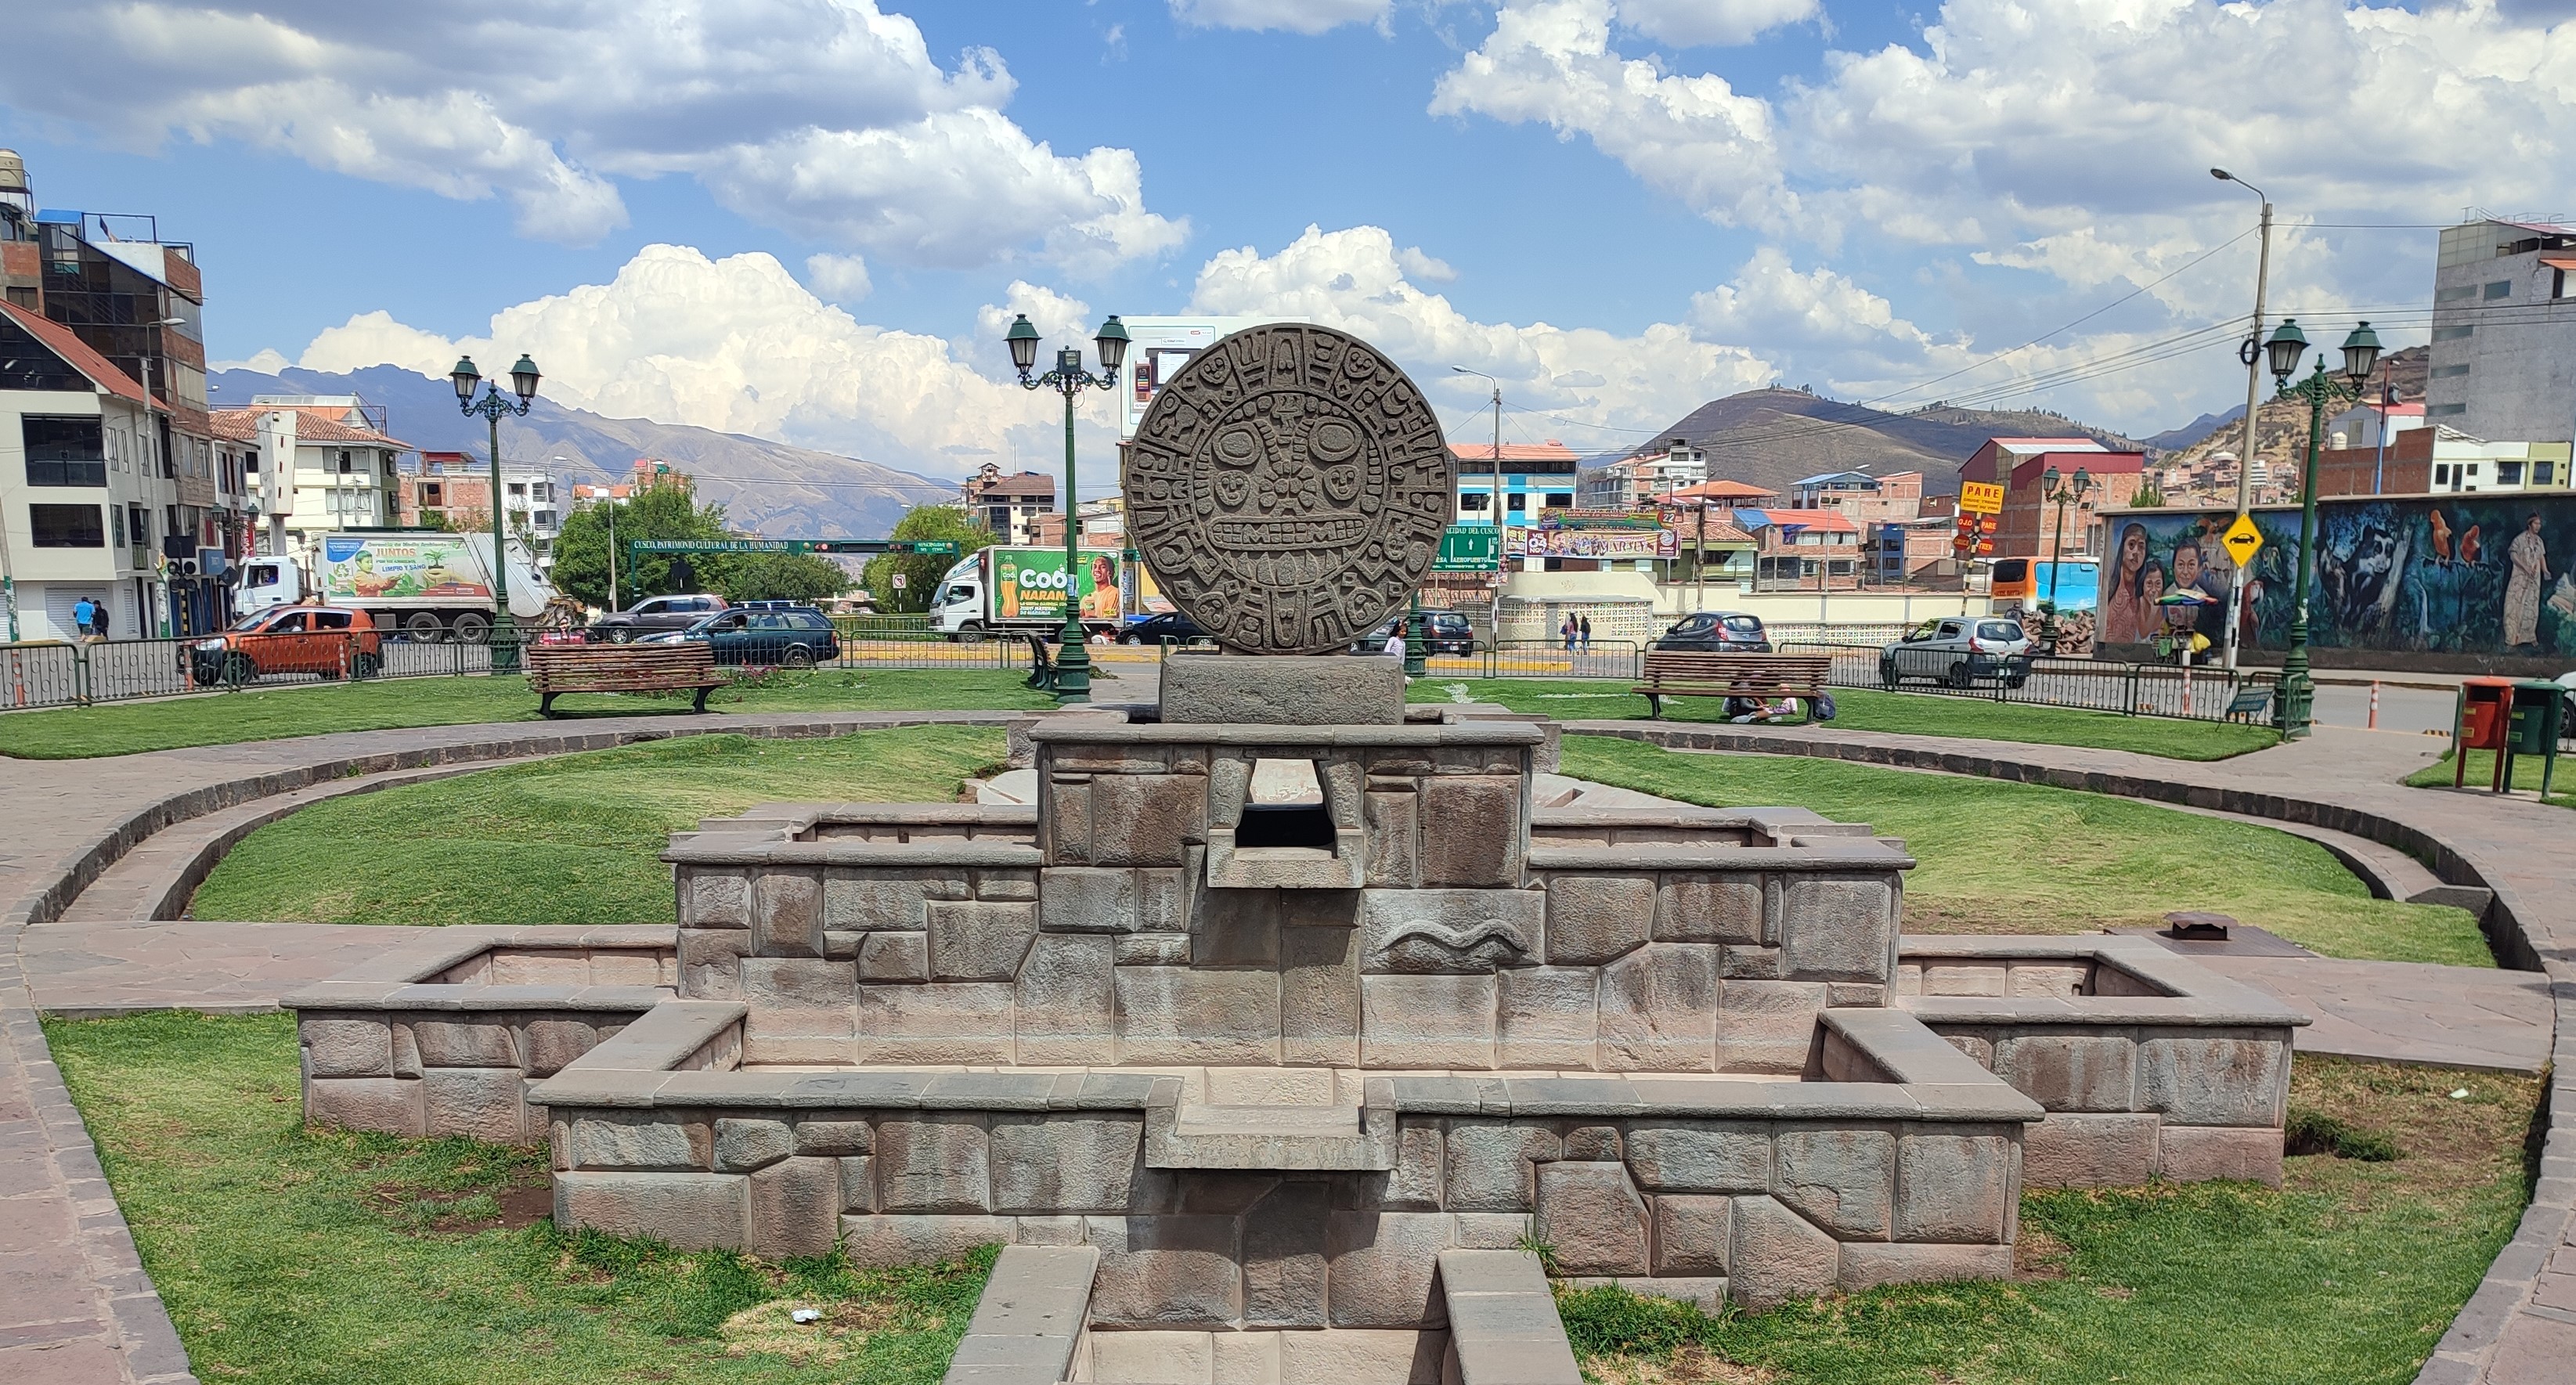 Рожица по центру - это не ассет из Зумы, а важный символ в Перу: Солнце Эченике (Sol de Echenique). Он используется в качестве герба Куско.